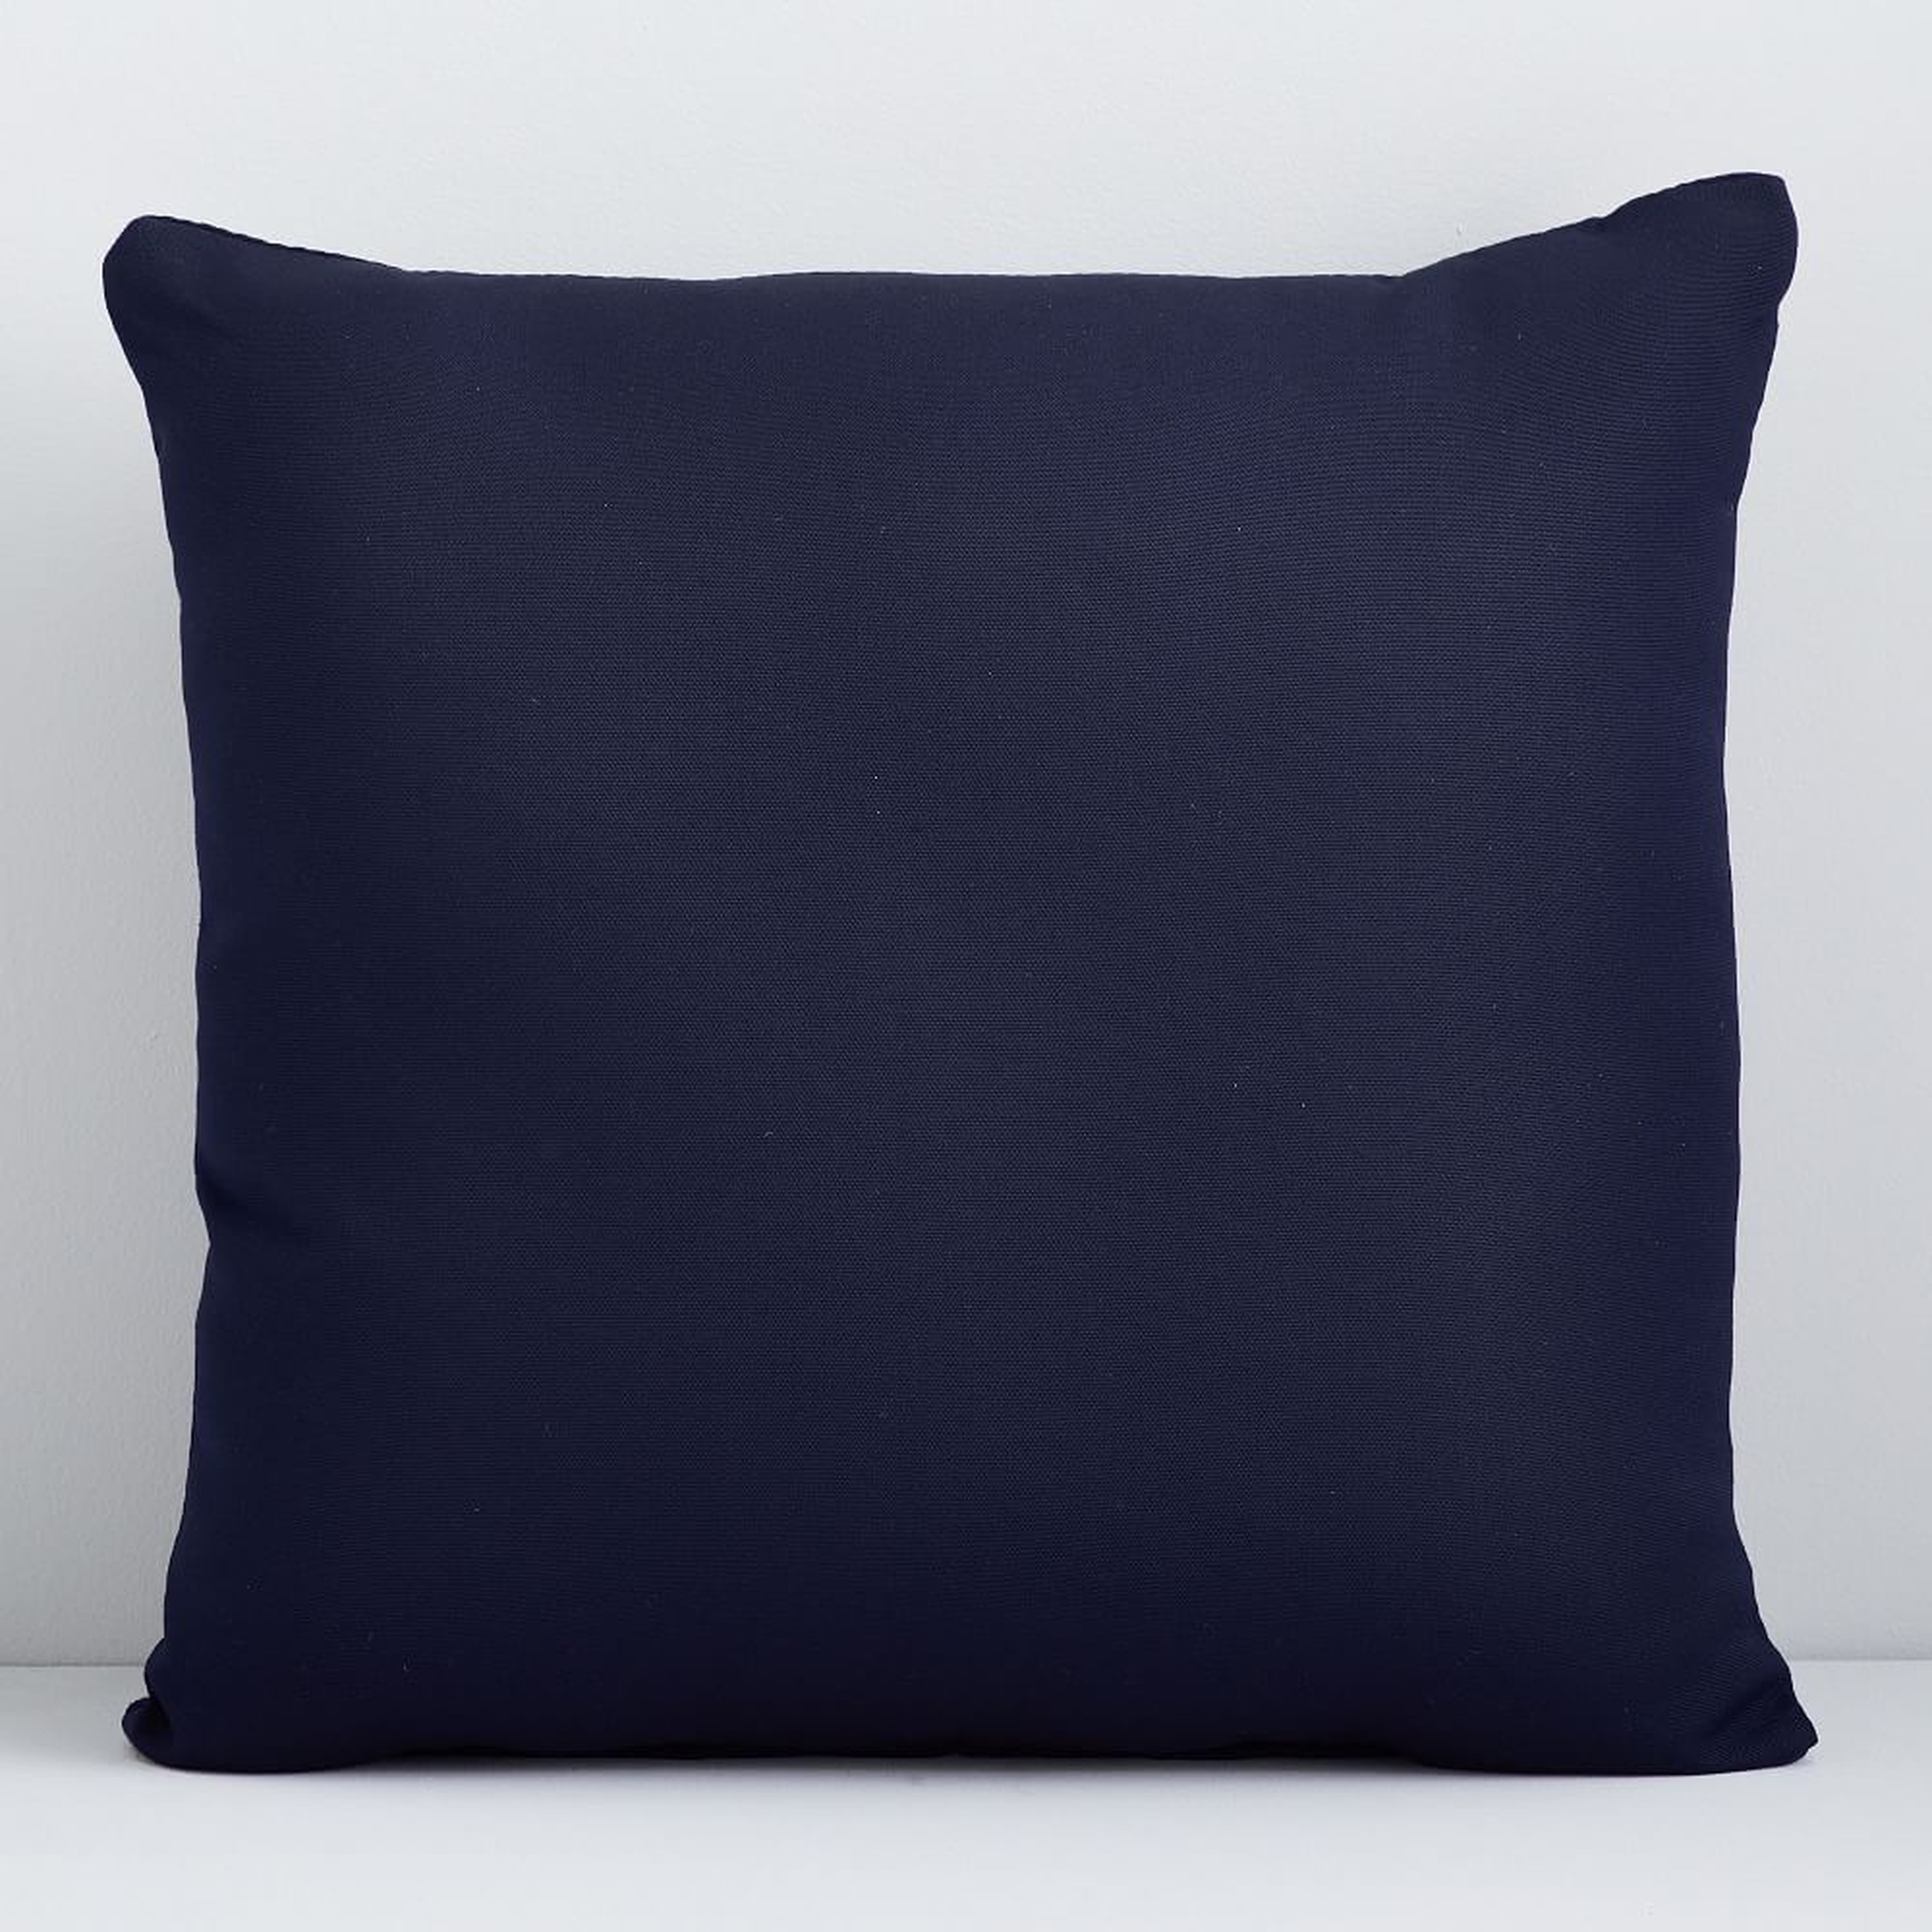 Sunbrella Indoor/Outdoor Canvas Pillow, 24"x24", Navy, Set of 2 - West Elm